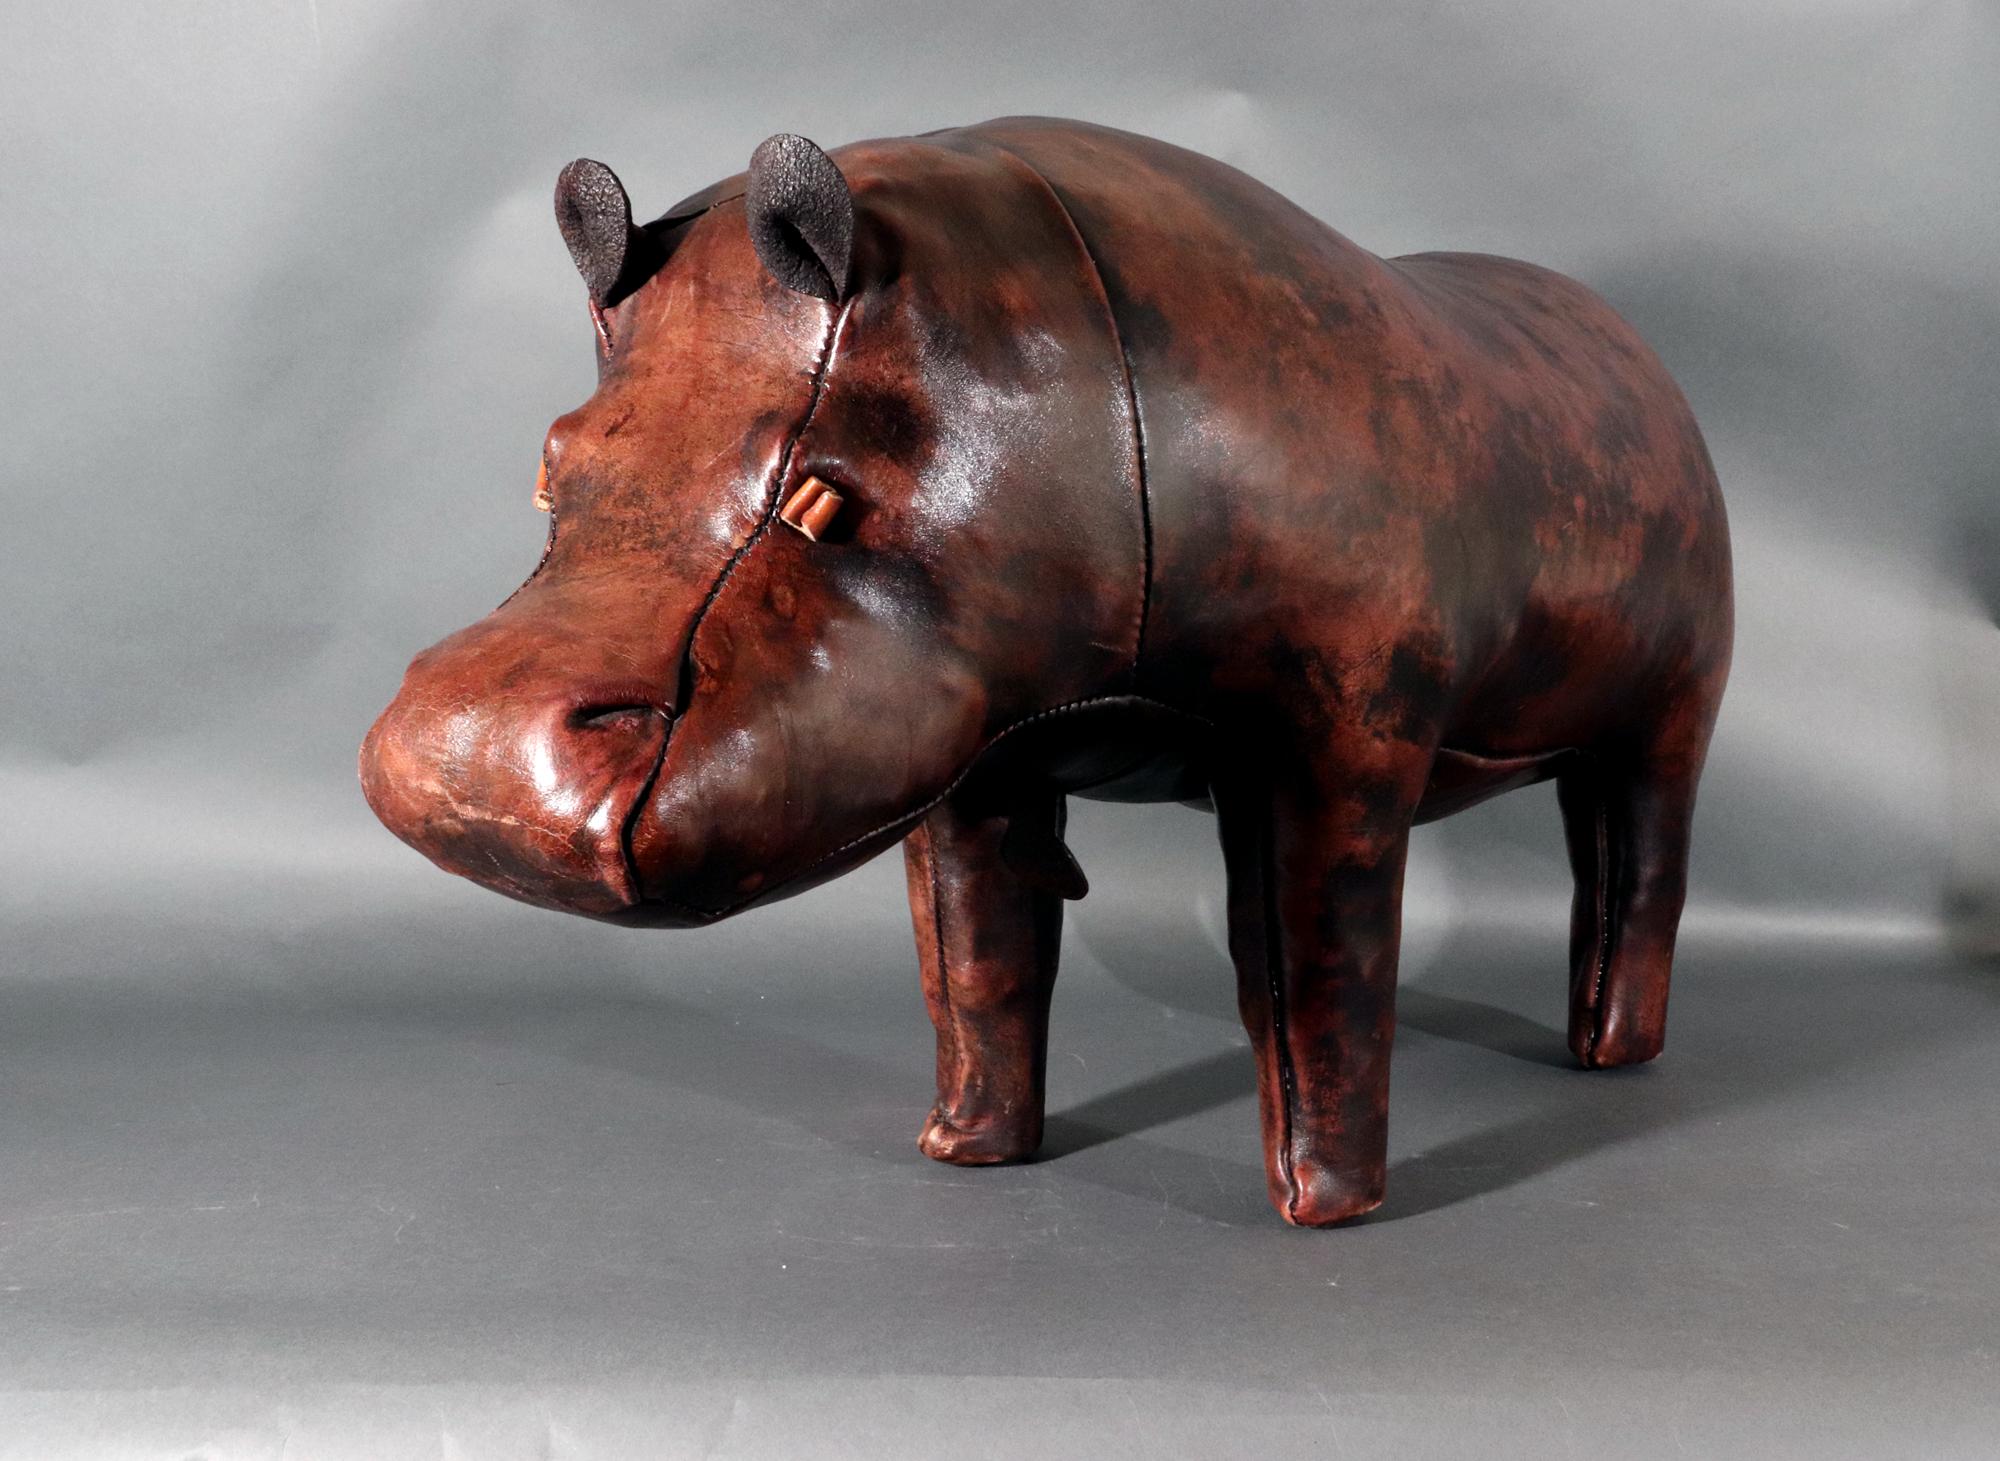 Vintage Leder Hippopotamus Hocker,
Nach Dimitri Omersa,
Jancraft,
1960-70er Jahre

Der Lederhocker oder Ottoman ist in der Form eines Nilpferdes in einem schönen Leder gestaltet.    Das Nilpferd ist mit seinen Augen, den kleinen Ohren und dem